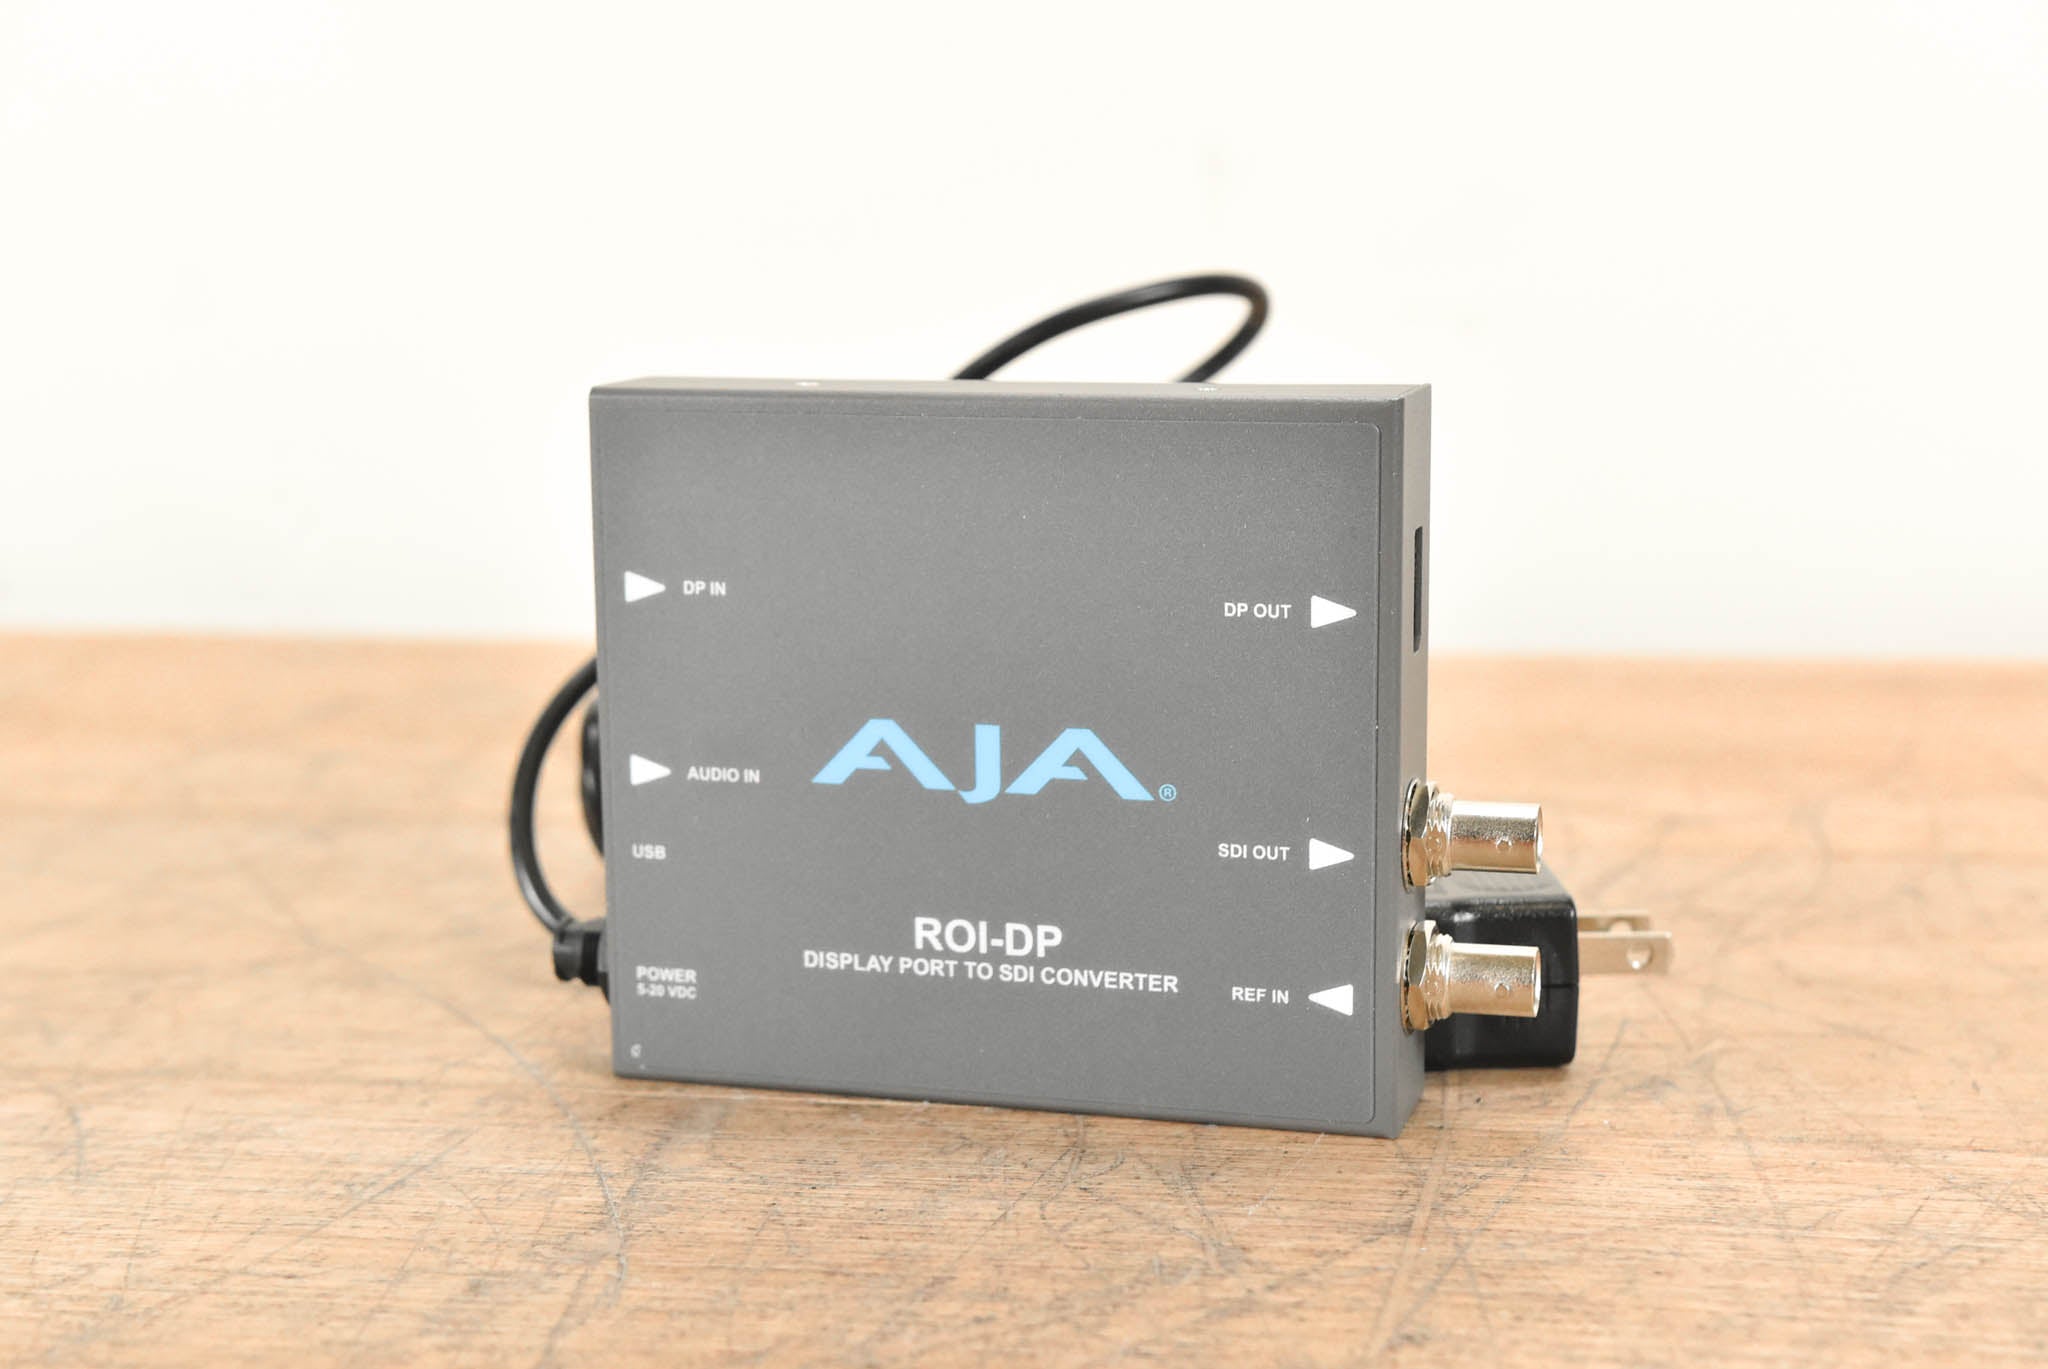 AJA ROI-DP DisplayPort to SDI Mini Converter with ROI Scaling